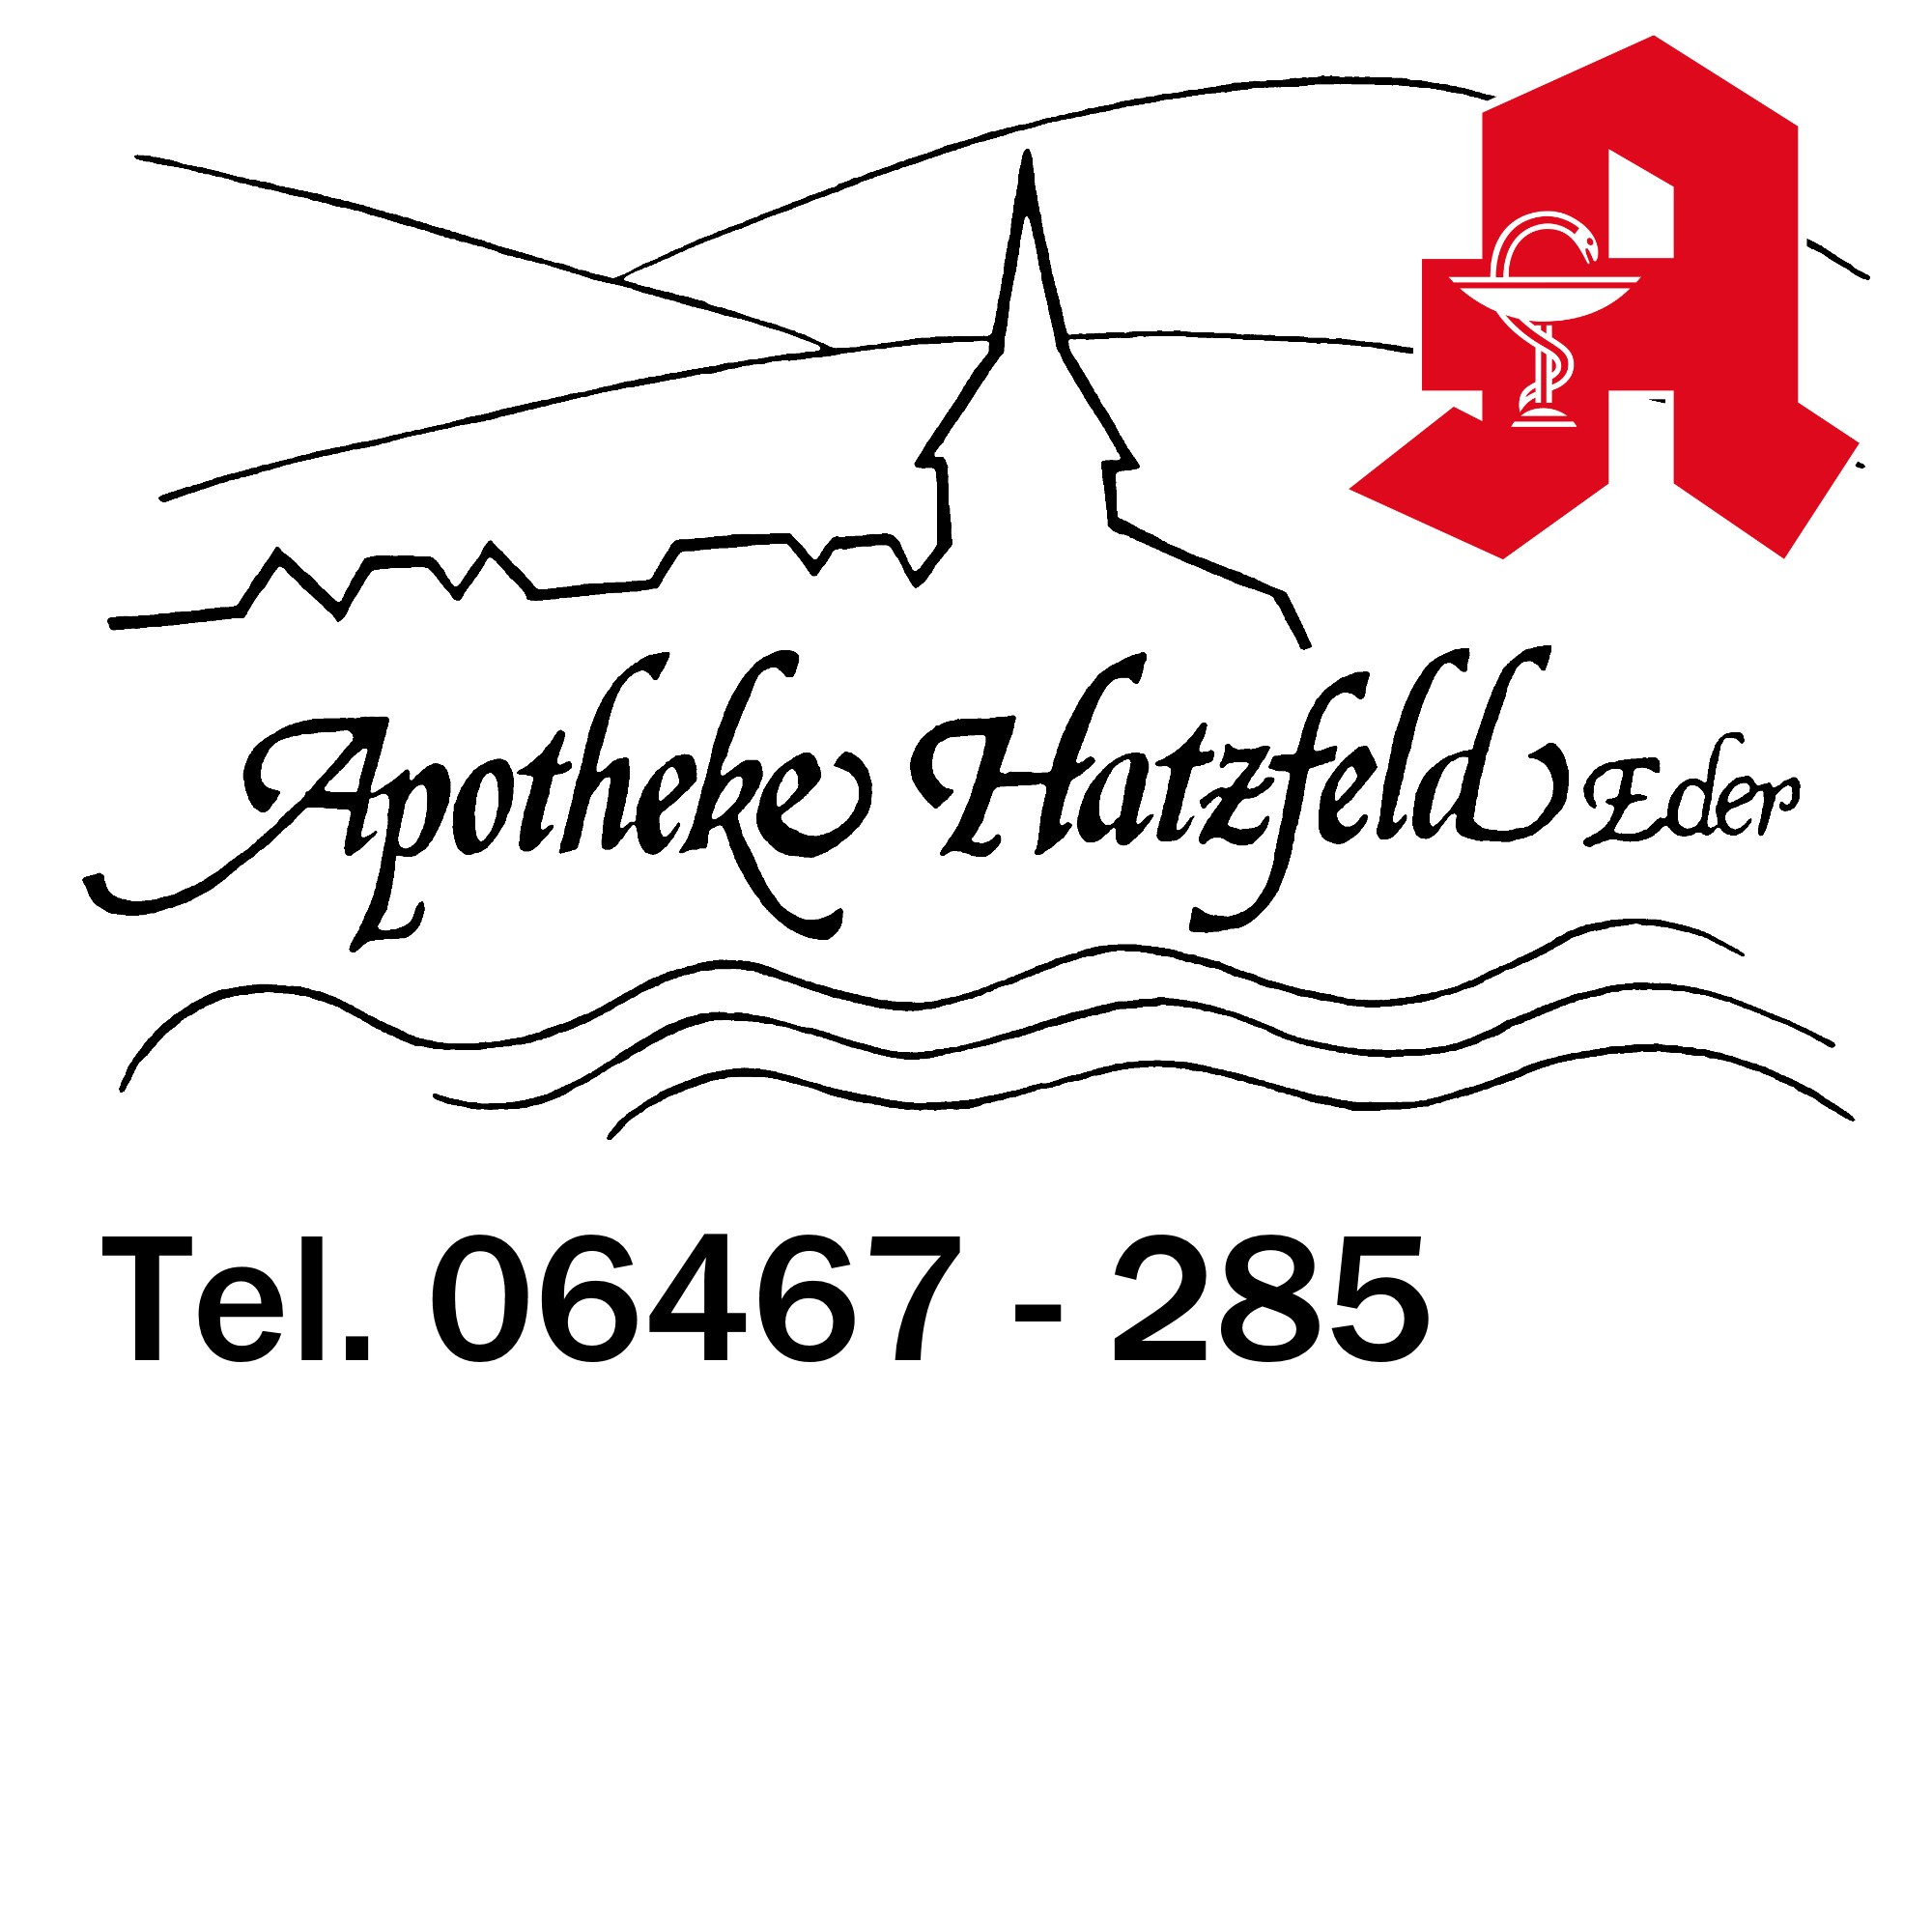 Apotheke Hatzfeld Logo